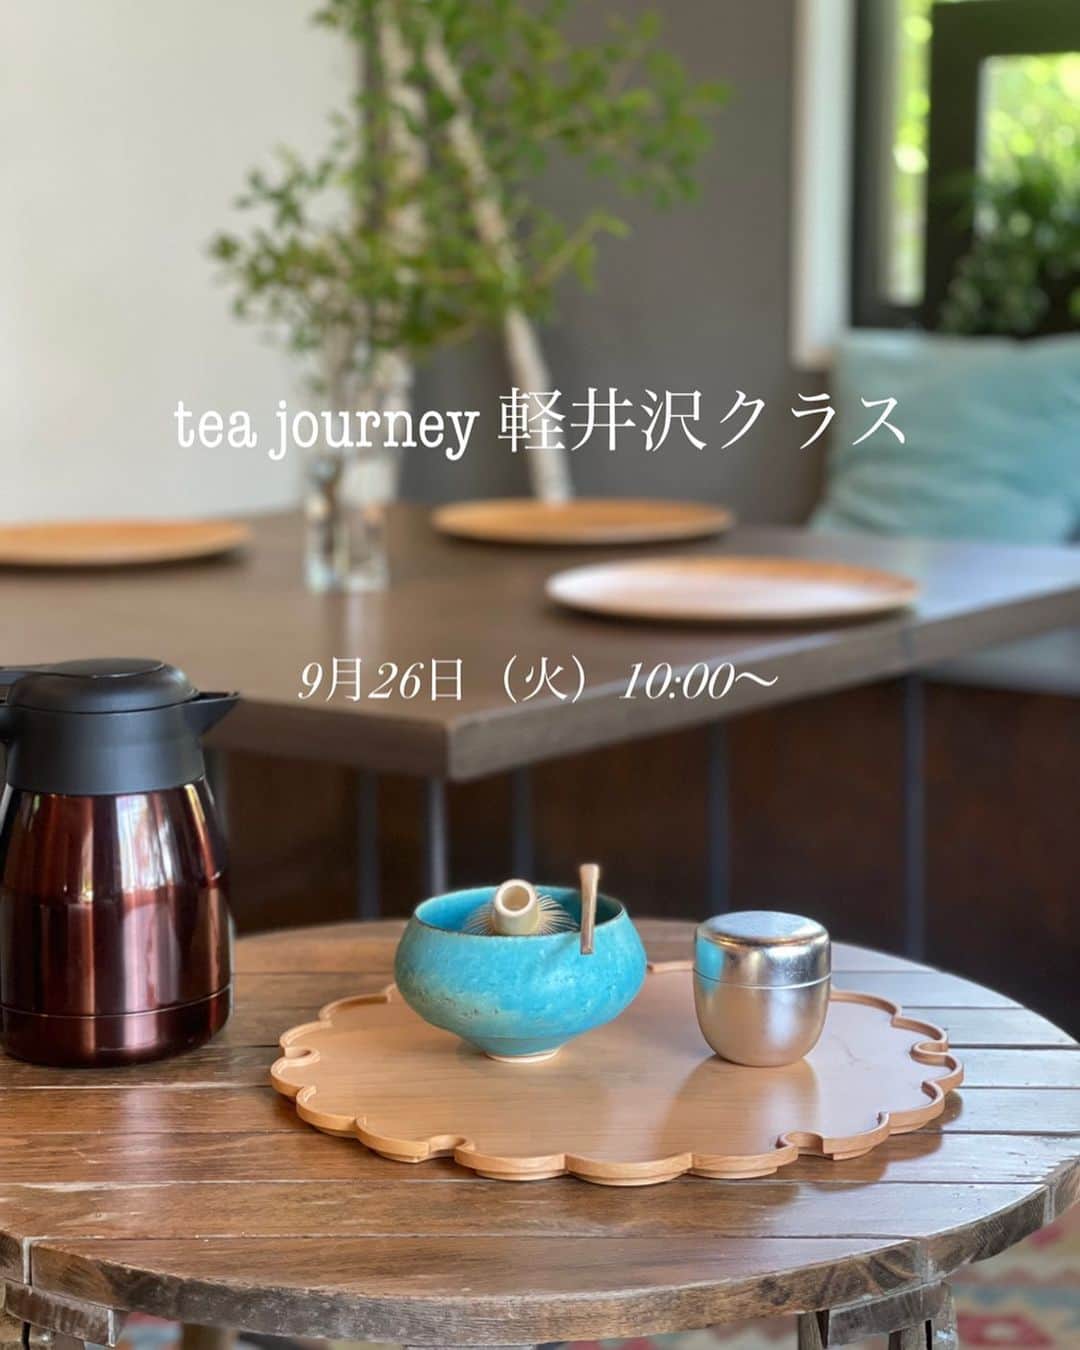 深澤里奈のインスタグラム：「◯◯◯  tea journey 軽井沢クラス再開致します  【9月tea journey 軽井沢 開催日のお知らせ】  ◆9月26日（火）10:00から2時間程度 ※ご都合により早めにご退席されたい場合などご相談ください。  ◆開催場所　お申し込み完了時にお知らせします。  初心者、継続の方、どなたでも歓迎します。継続的にテーブル茶の点前を学べるクラスです。最初に受講される方には、体験料金をご用意しております。  詳細はこちらをご確認ください。 ↓ https://www.teajourney.jp/class  ◆お申し込みは、tea journey 公式LINEからお願いいたします。 公式LINE→ https://lin.ee/0if3SLO ハイライトにQRコードもございます。  その際、 ①お名前（ふりがな）  ②参加希望日  ③当日つながるお電話番号をご明記ください。 テーブルと椅子で行う「テーブル茶」となります。 皆様のお越しをお待ちしています。  #teajourney  #tabletea  #テーブル茶 #軽井沢茶道 #軽井沢茶道教室 #抹茶 #茶道 #茶の湯 #抹茶」